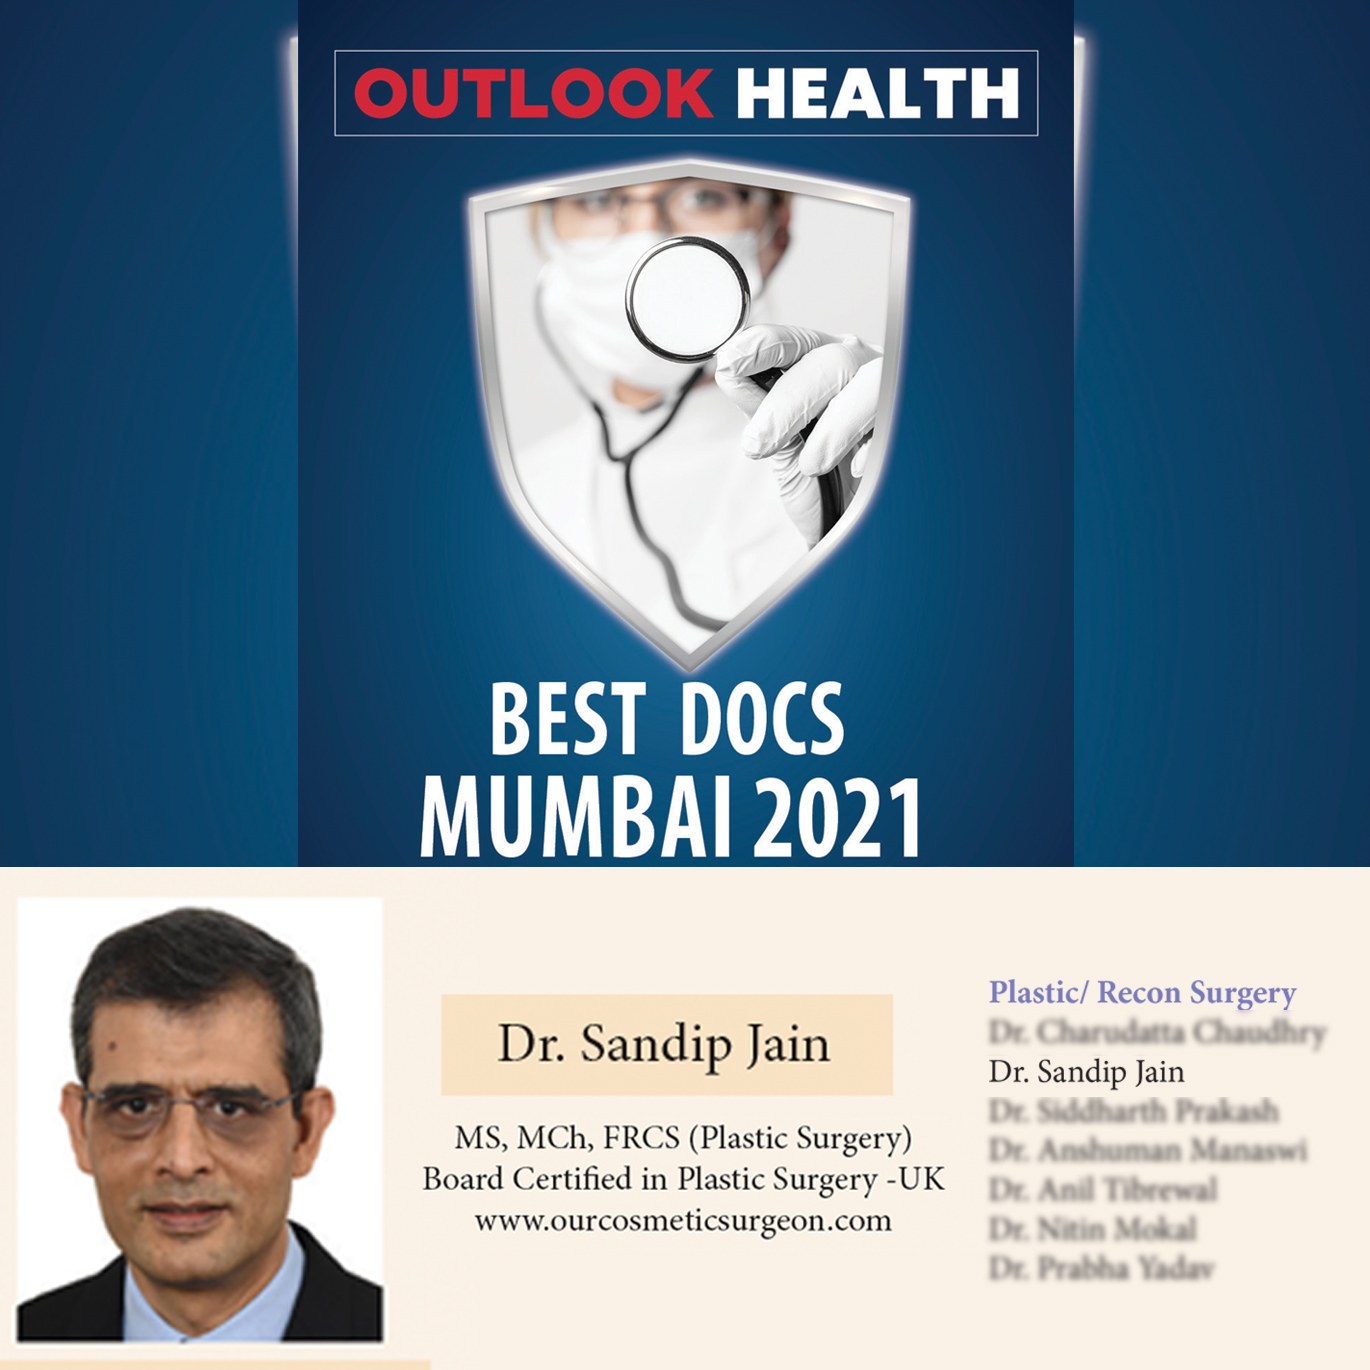 Best Docs Mumbai 2021